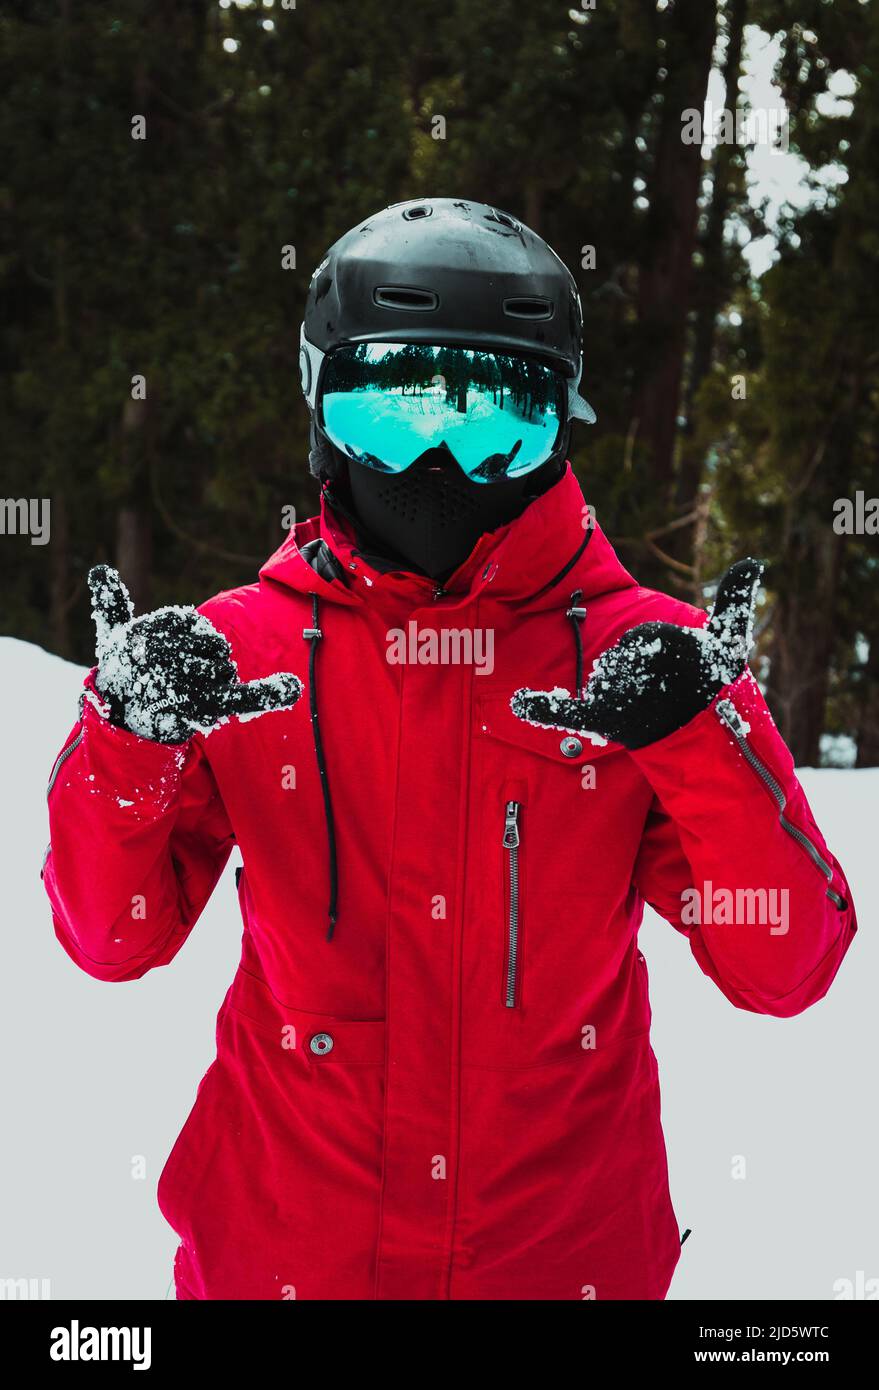 homme sur une montagne enneigée en veste rouge, casque noir et lunettes de ski bleues Banque D'Images